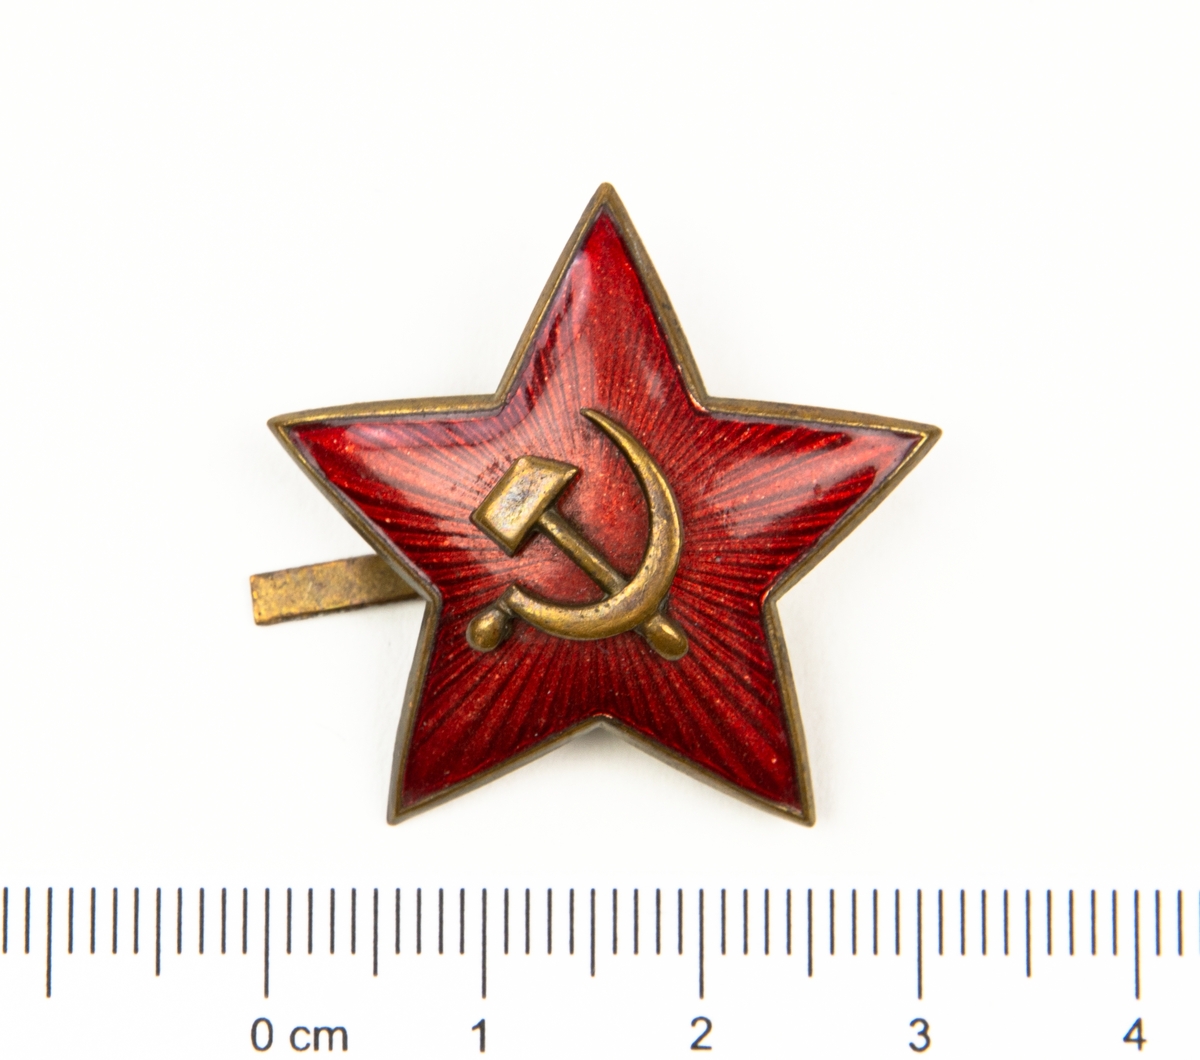 Mössmärke i form av en 5-uddig stjärna. På märket hammaren och skäran. Från Ryssland.